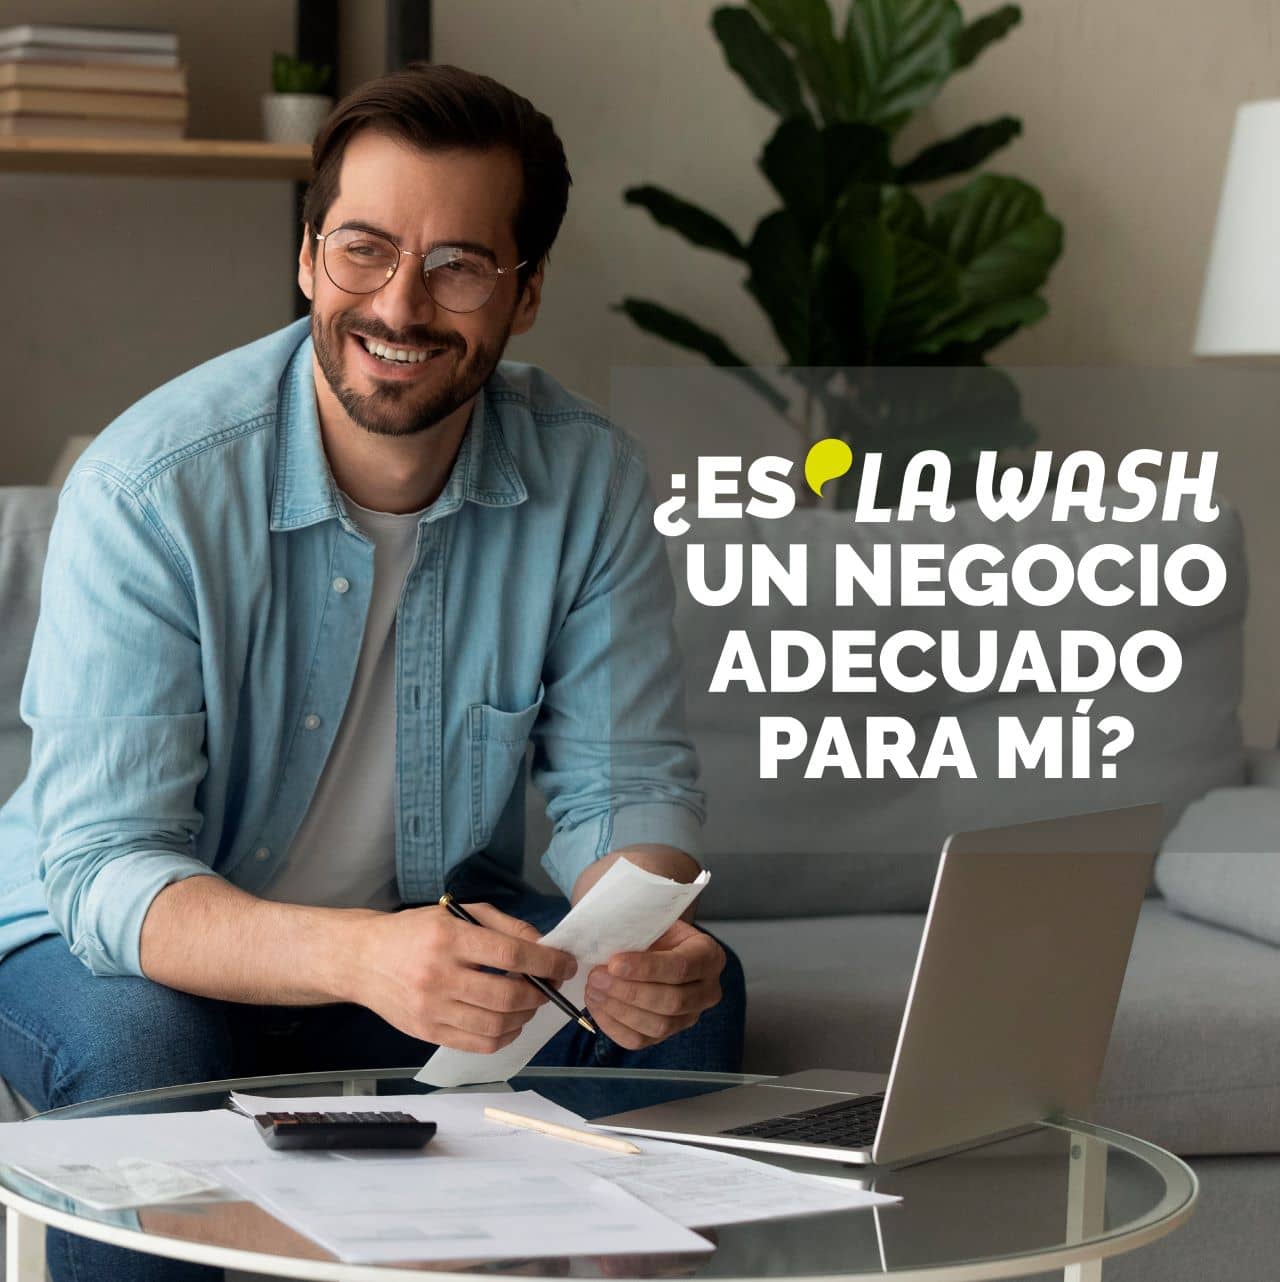 ¿Es La Wash un negocio adecuado para mí?